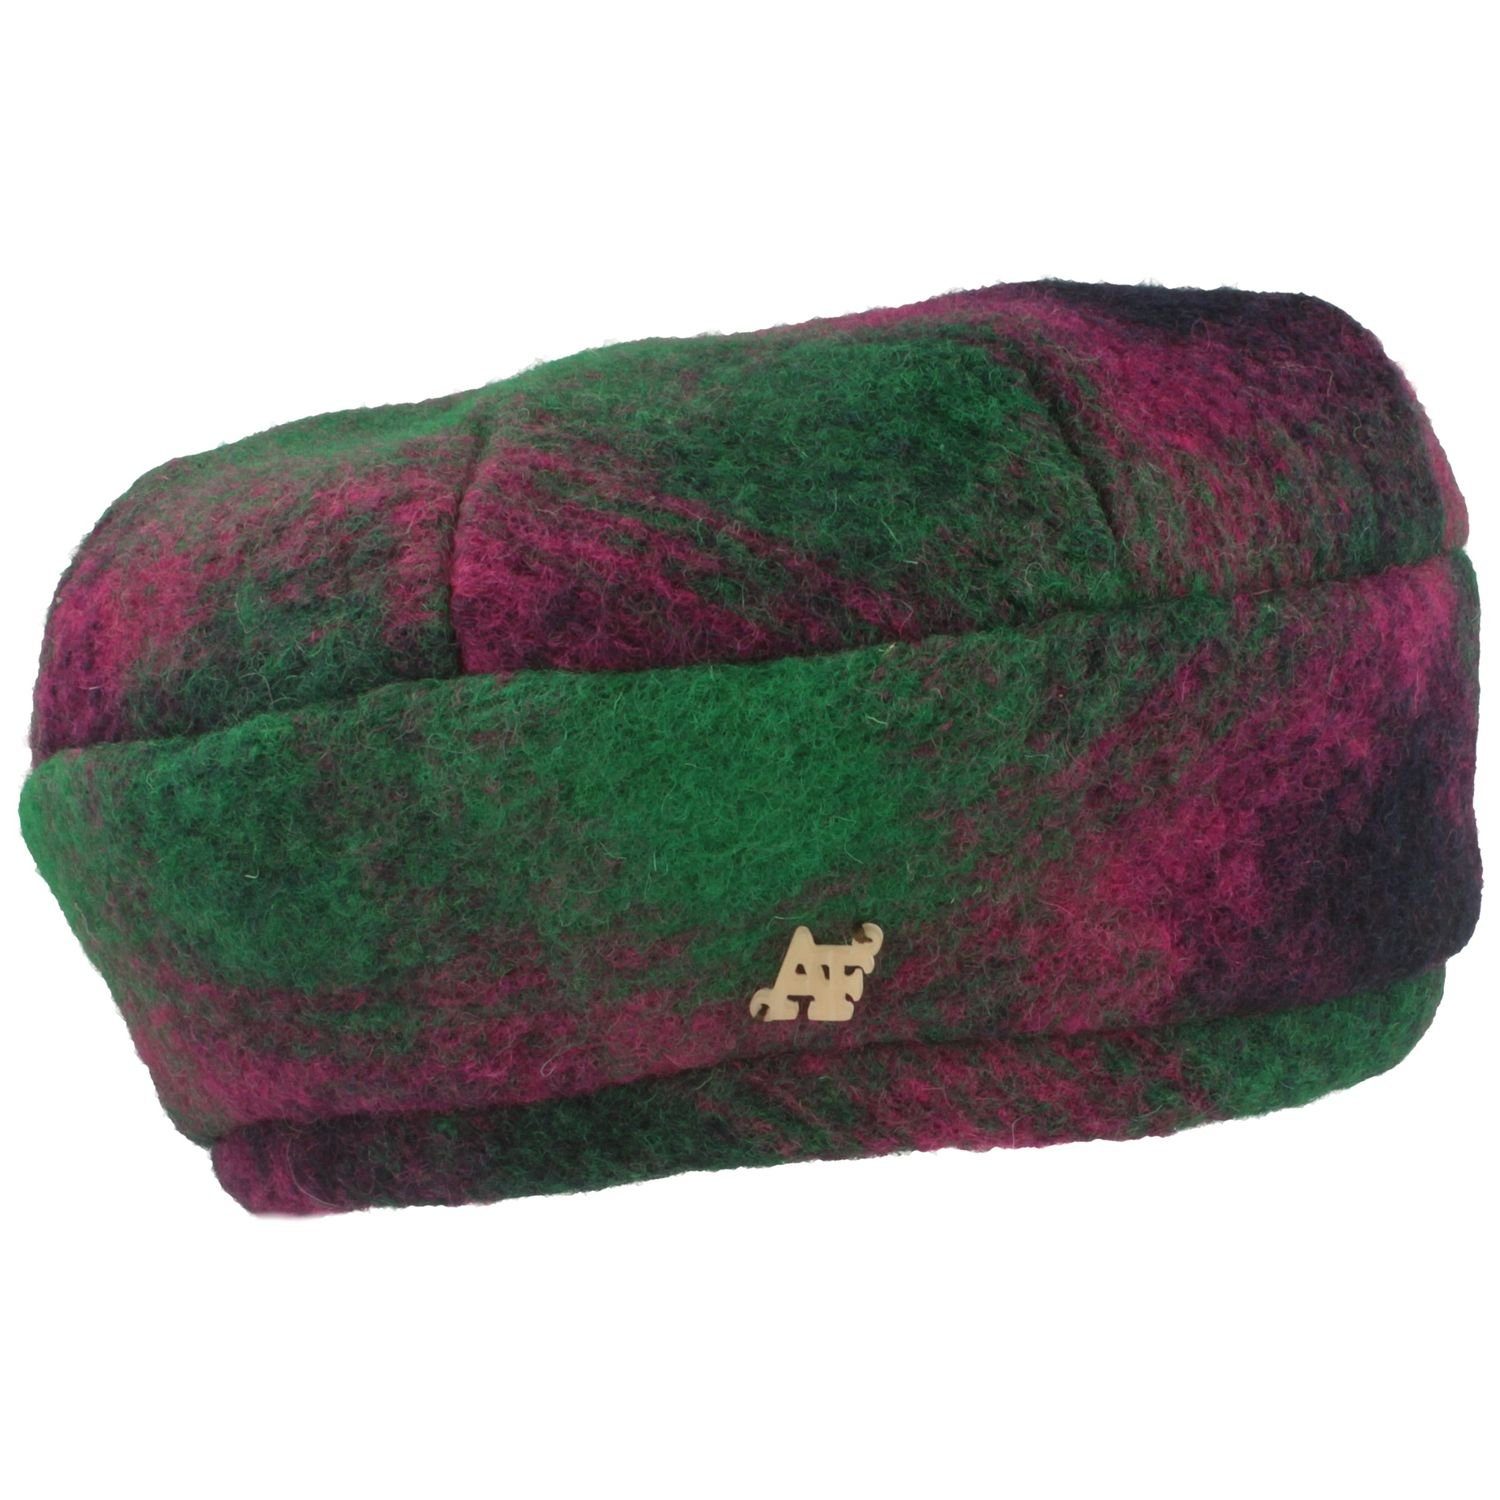 Angiolo Frasconi Fischerhut Damen Baskenmütze aus Walk + Fleece Futter 5 grün/pink